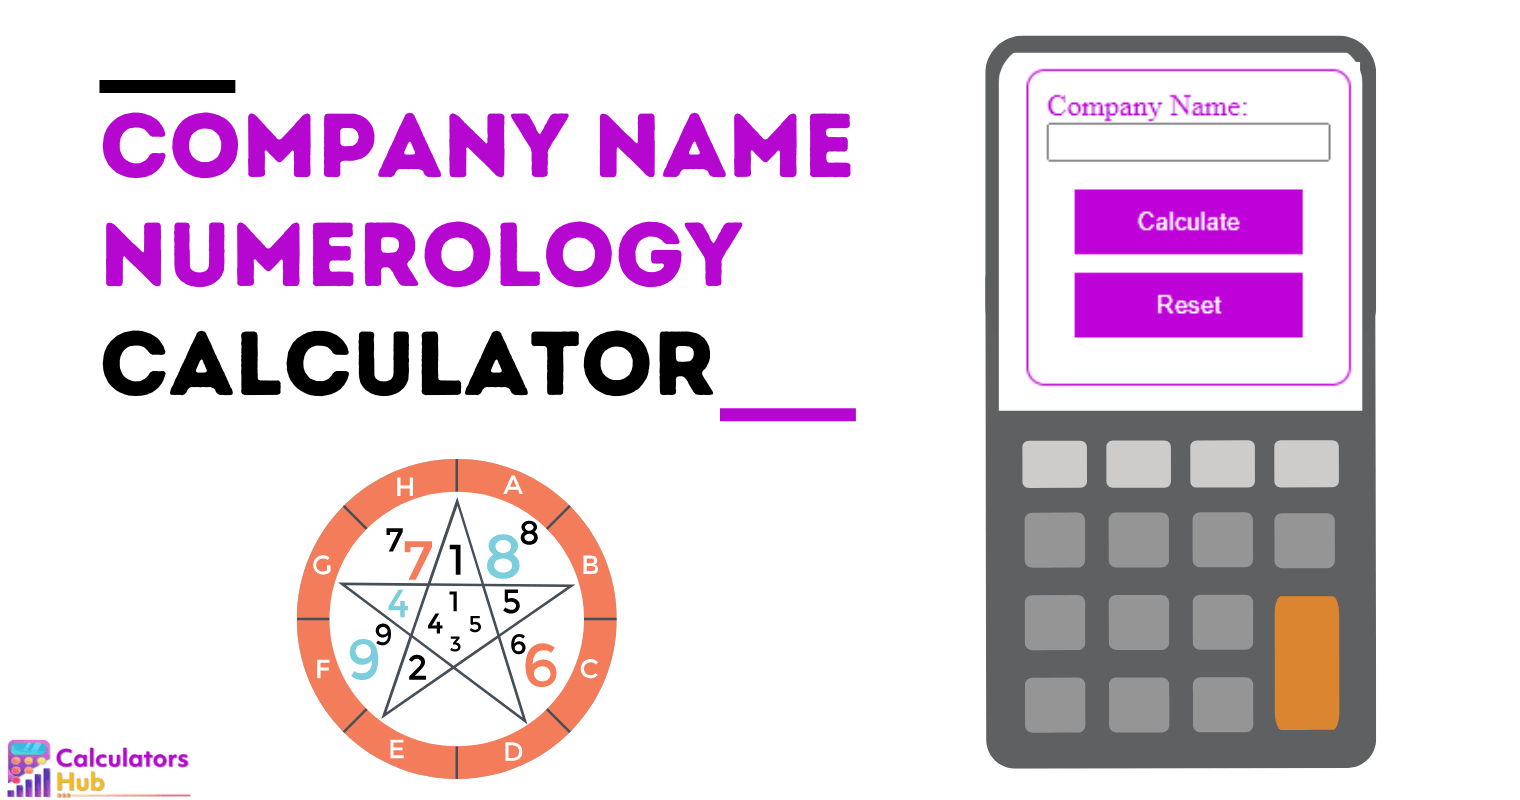 Calculadora de numerología del nombre de la empresa